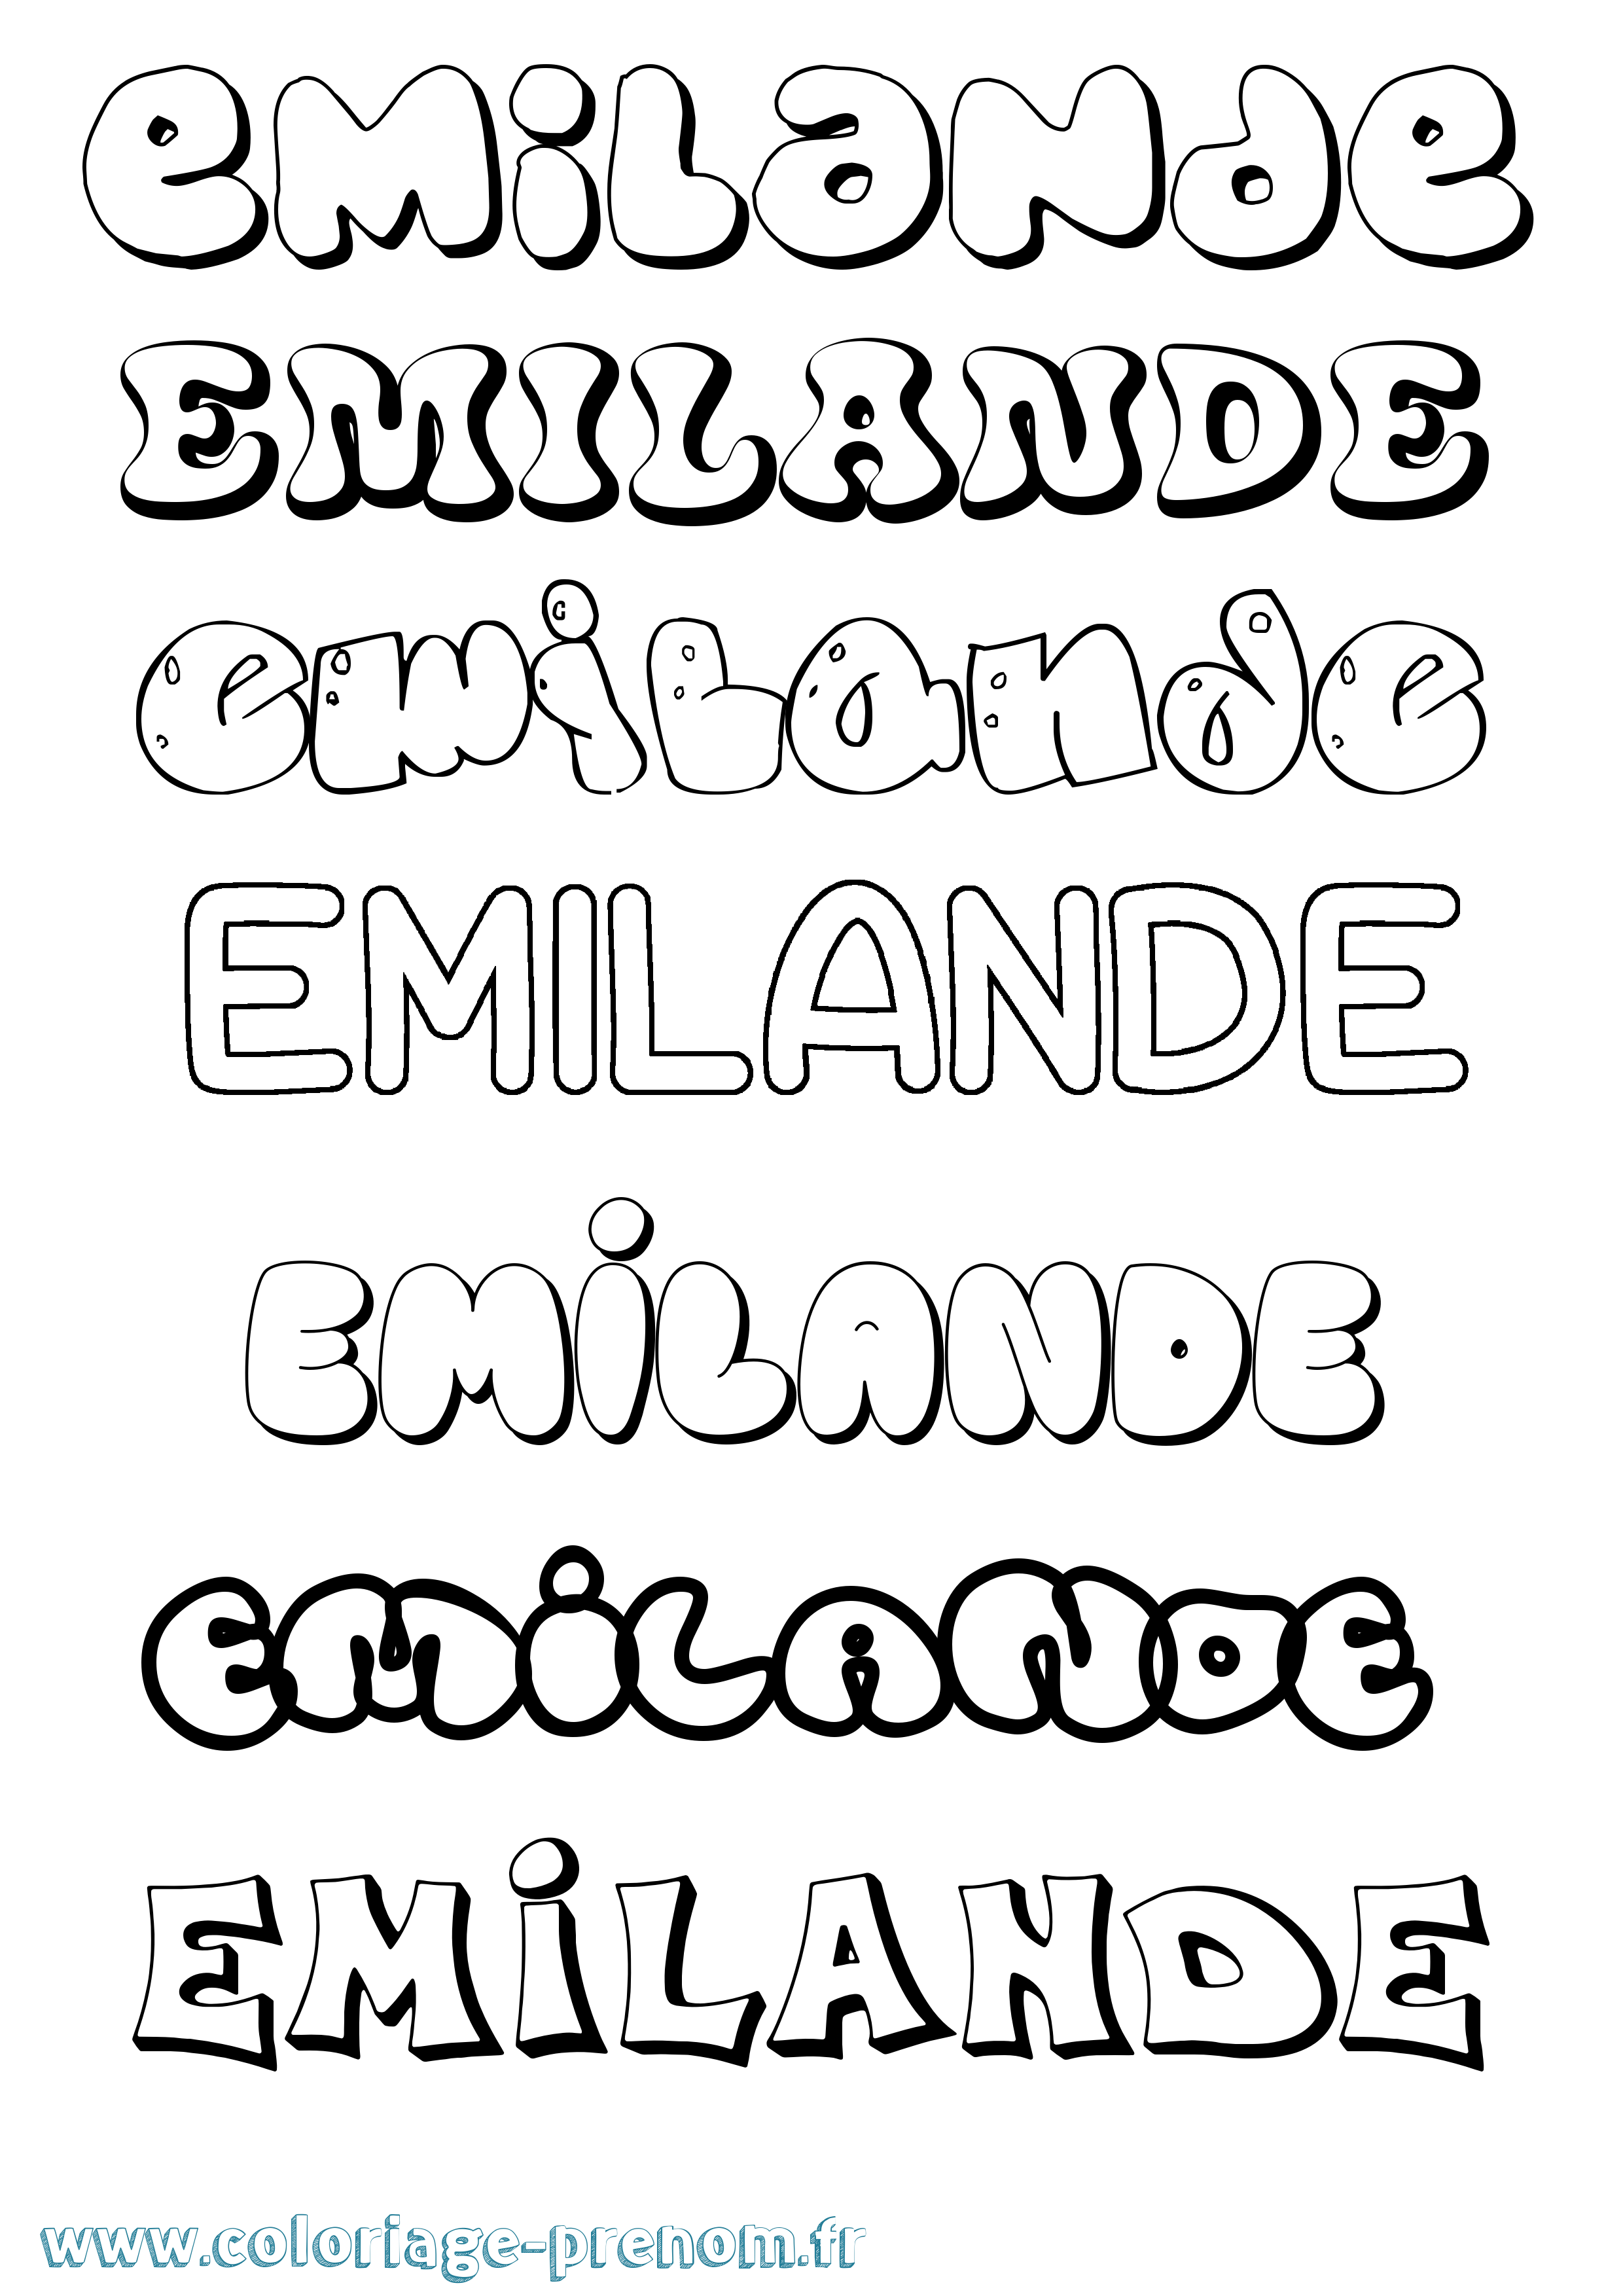 Coloriage prénom Emilande Bubble